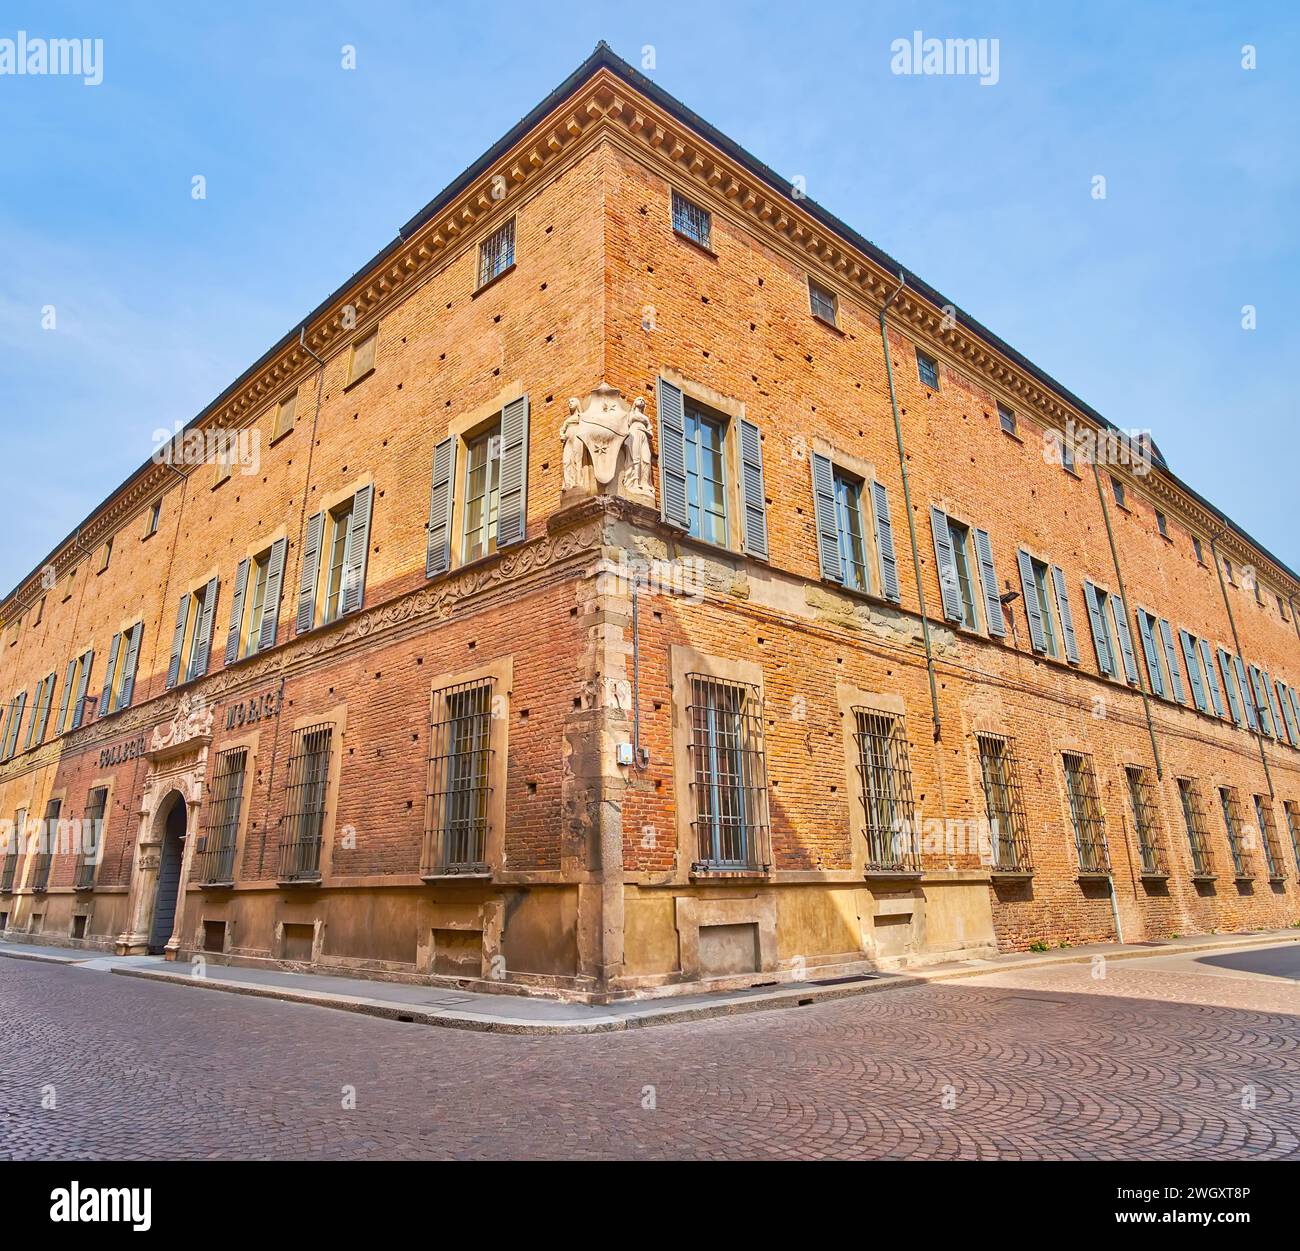 The corner of the medieval brick Palazzo Scotti di Castelbosco Marazzani, Piacenza, Italy Stock Photo